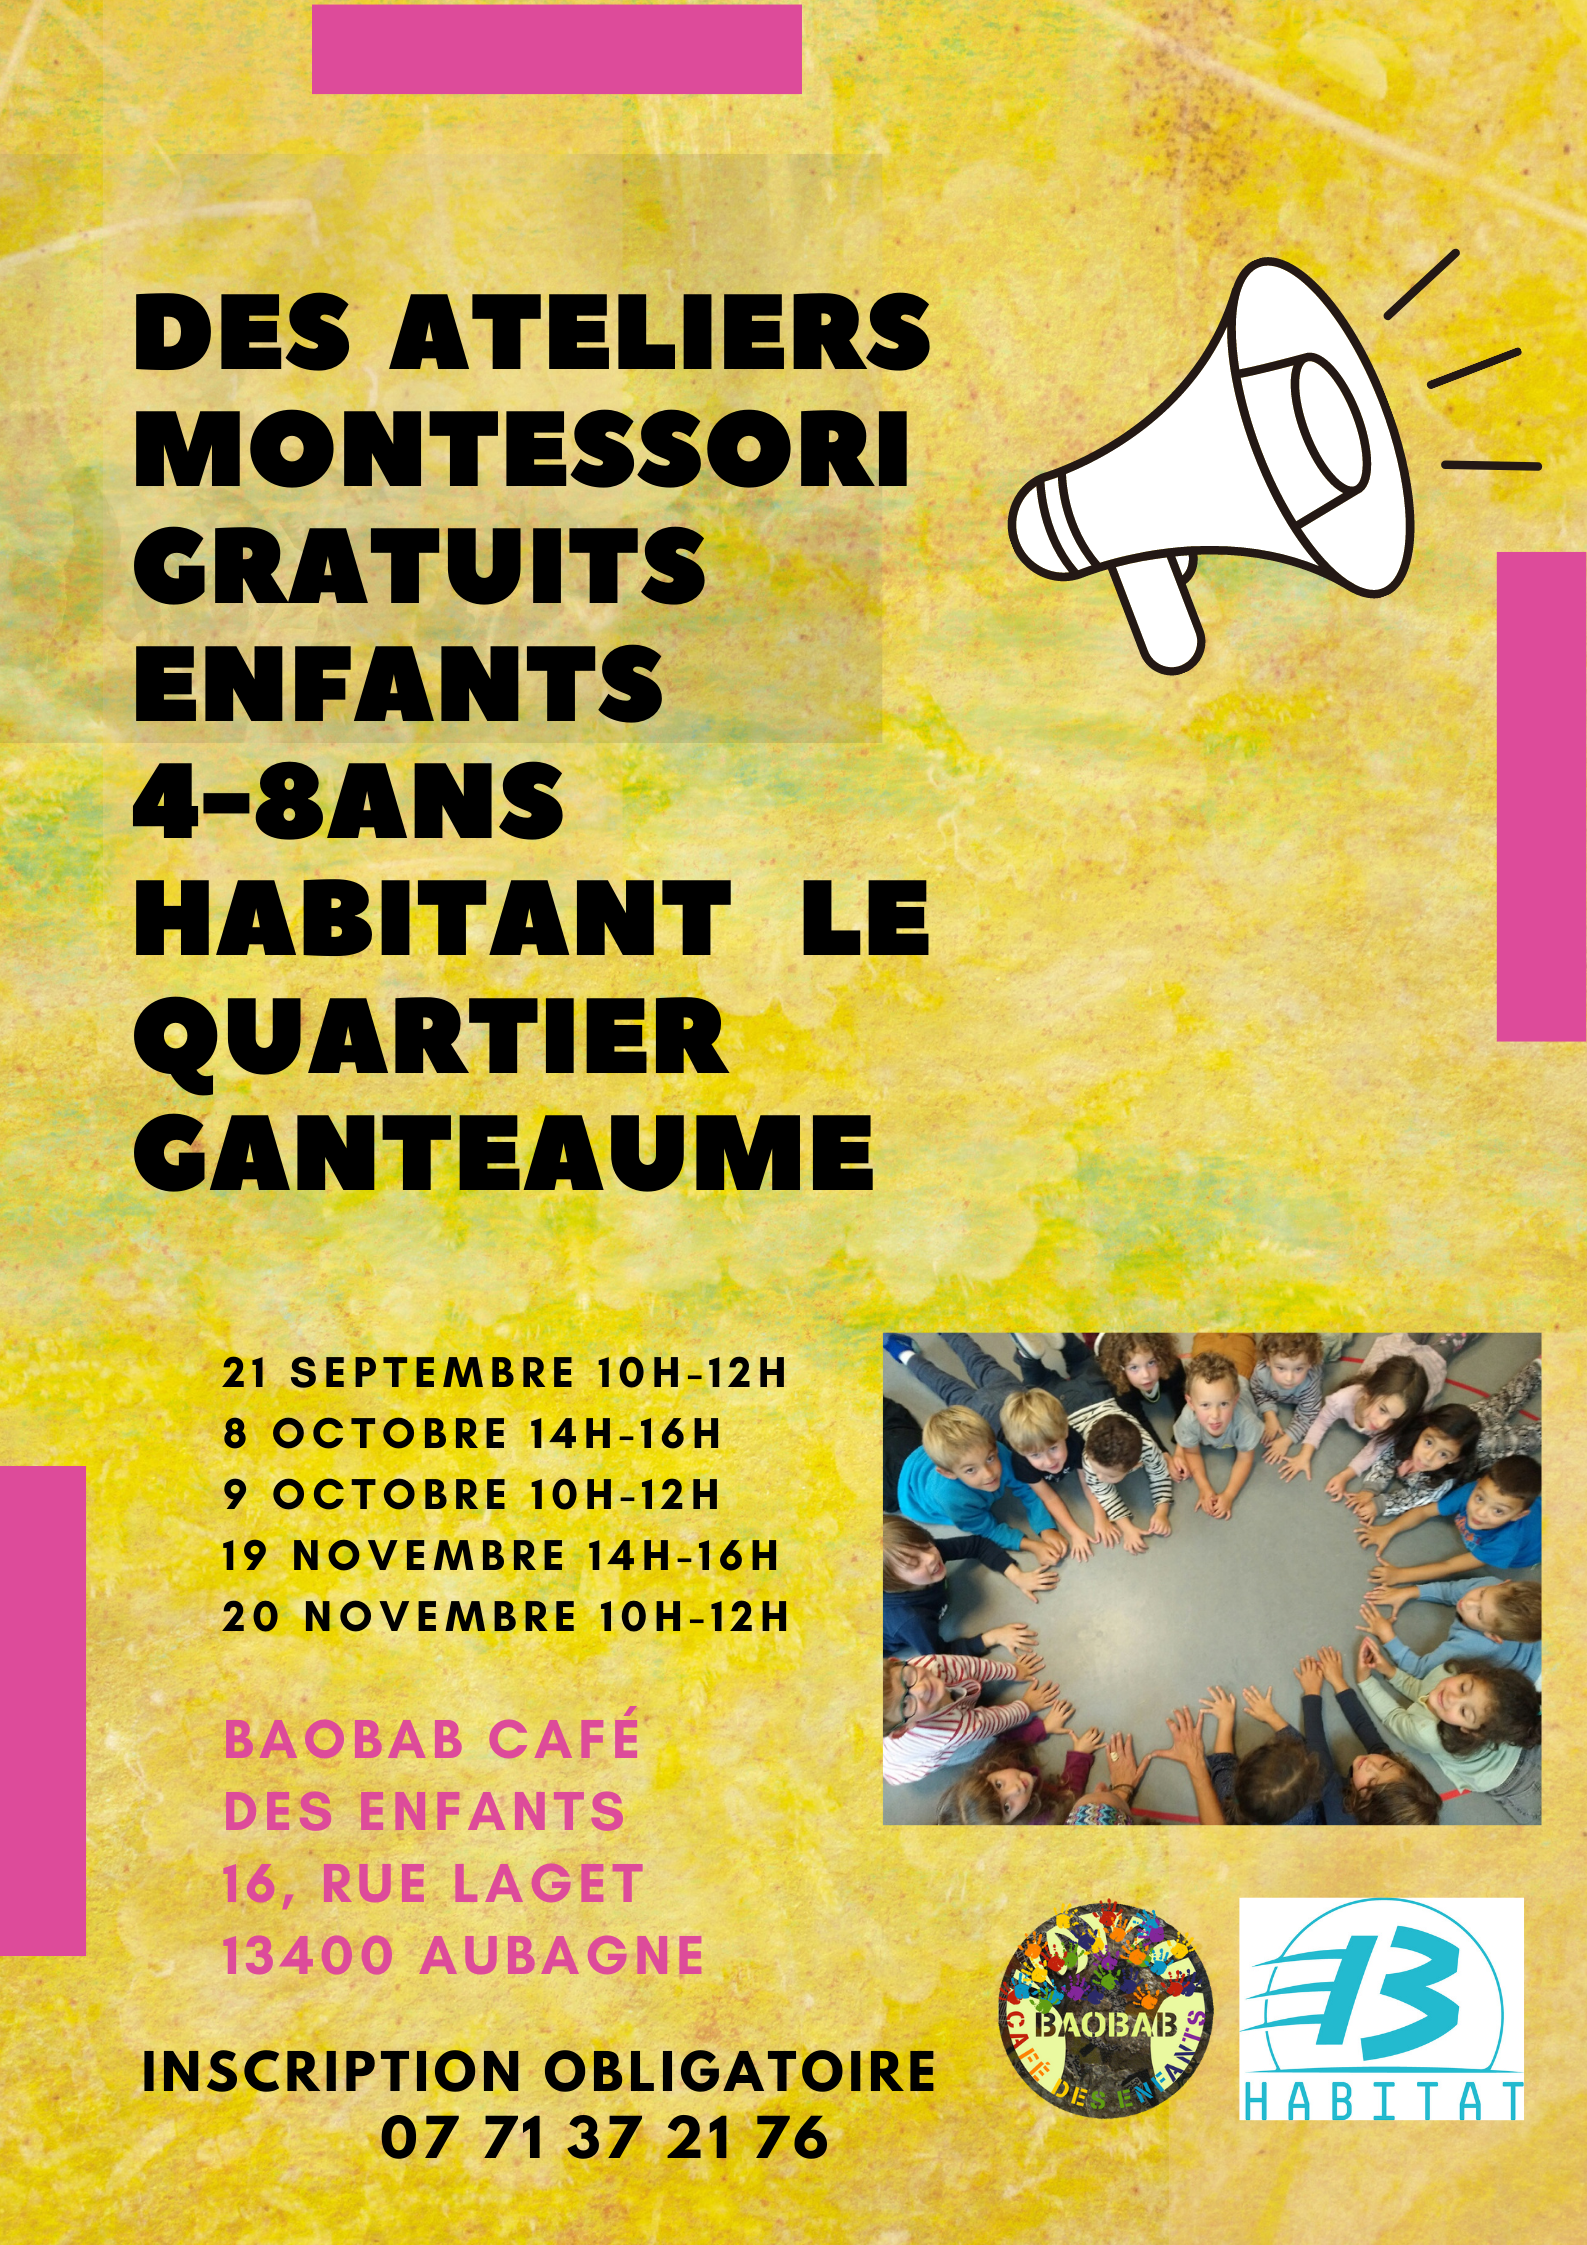 Ateliers Montessori gratuits à Aubagne